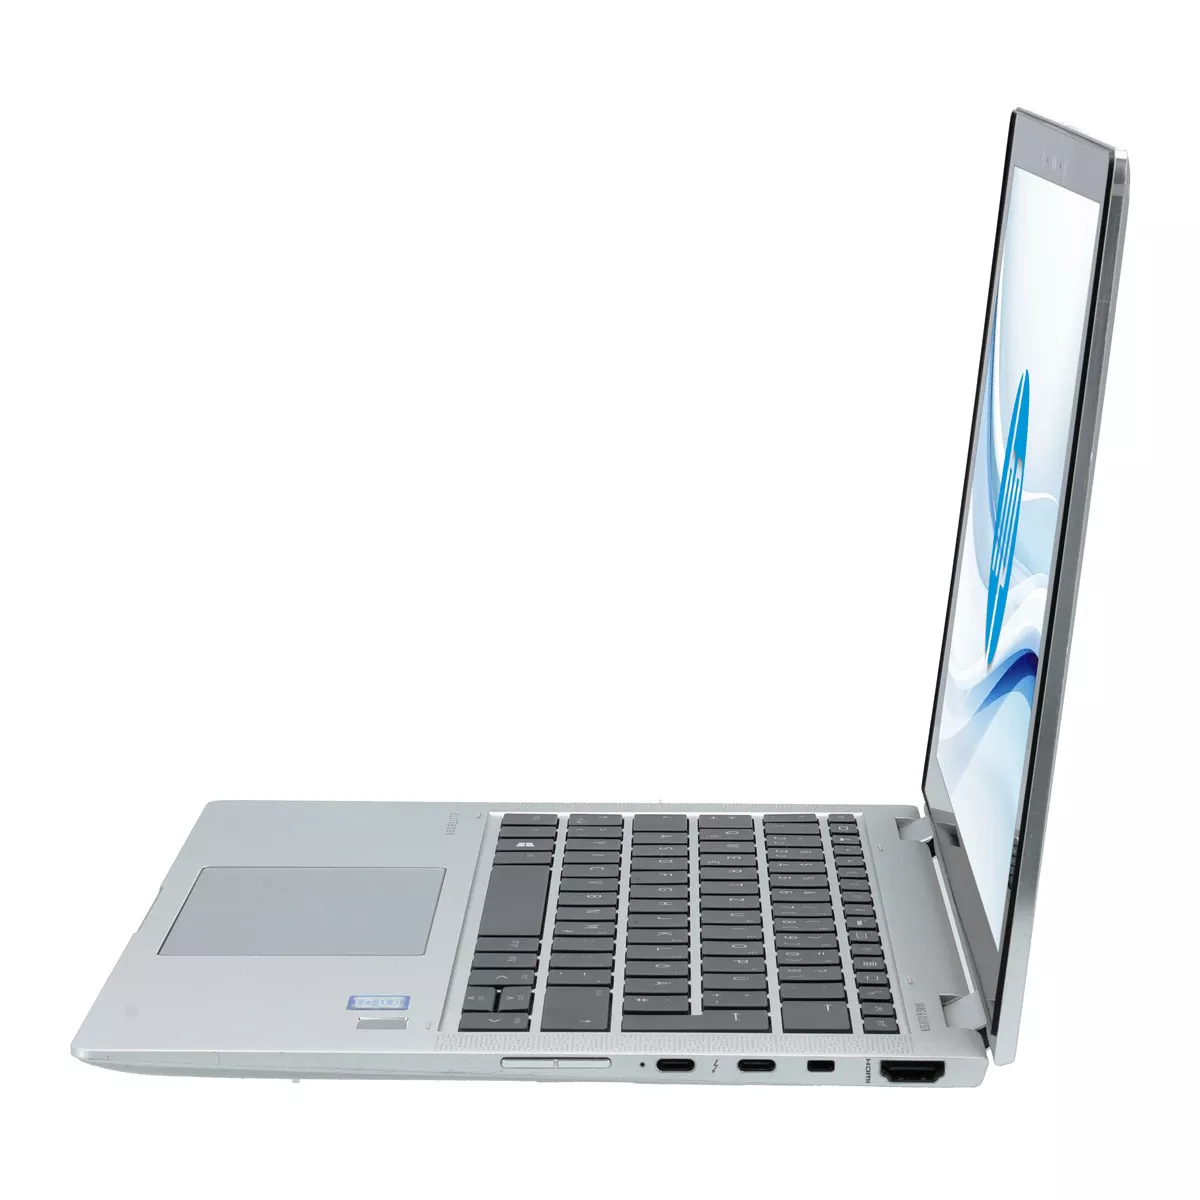 HP EliteBook x360 1030 G3 Core i7 8650U 16 GB 500 GB M.2 nVME SSD Touch Webcam A+